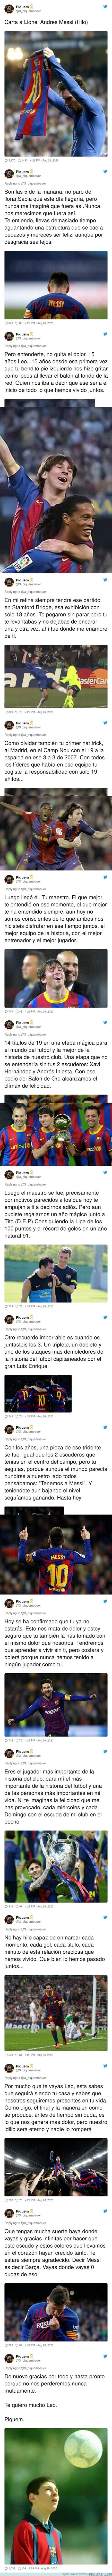 1114515 - La carta de despedida de un fan a Leo Messi que lo está petando en Twitter y que te hará llorar si eres culé, por @3_piquembauer